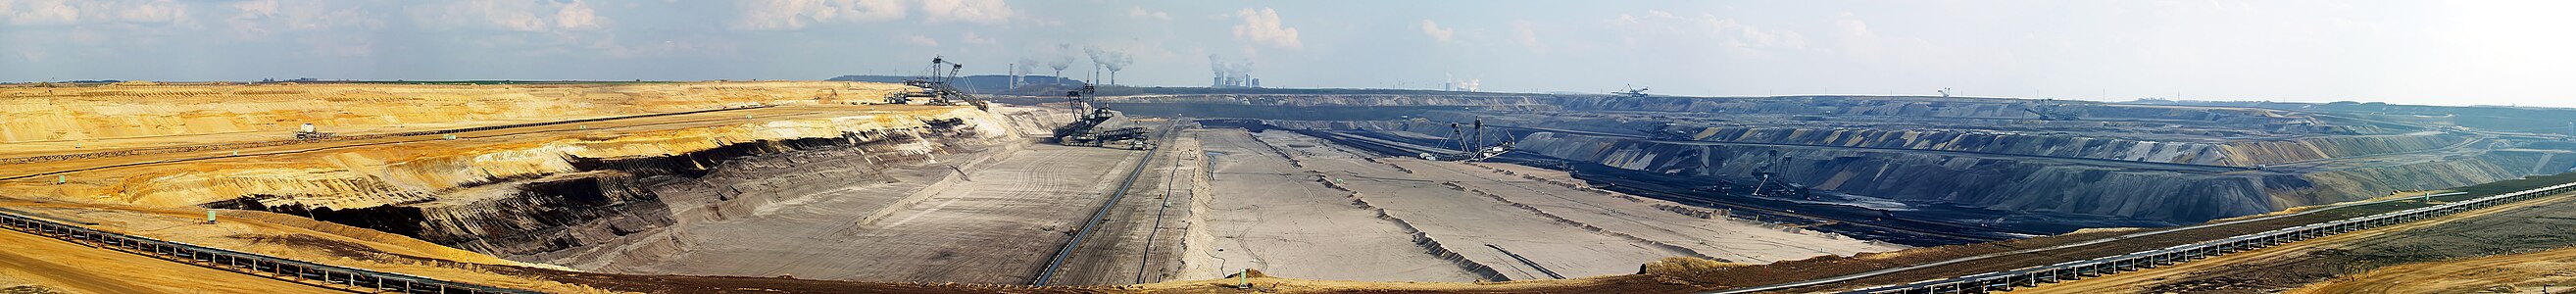 Garzweiler Maden Ocağı, açık ocak madenciliği şeklinde çalışan bir linyit madenidir. (Üreten:Raymond)